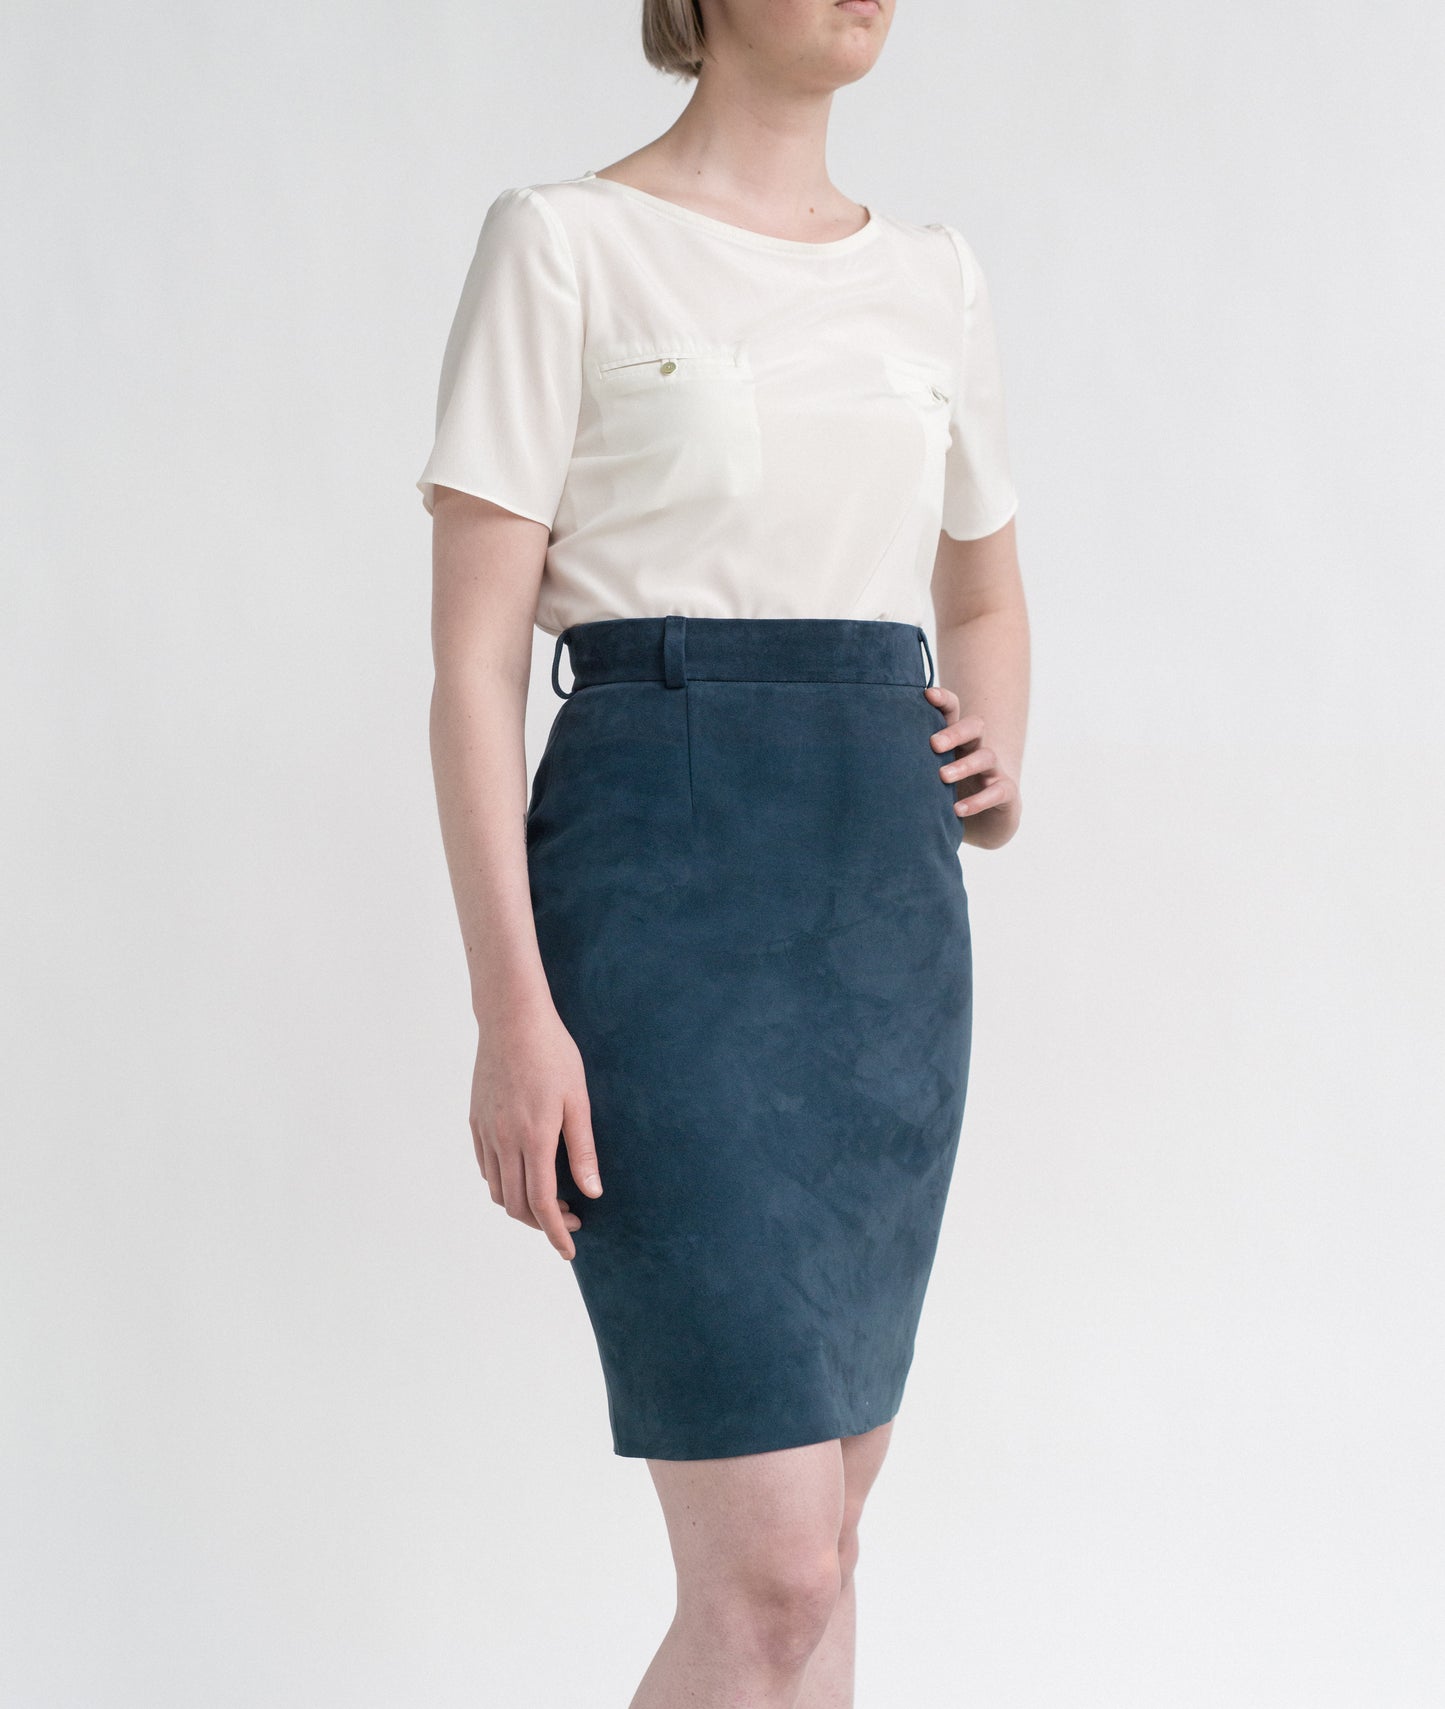 Mona knee- long skirt